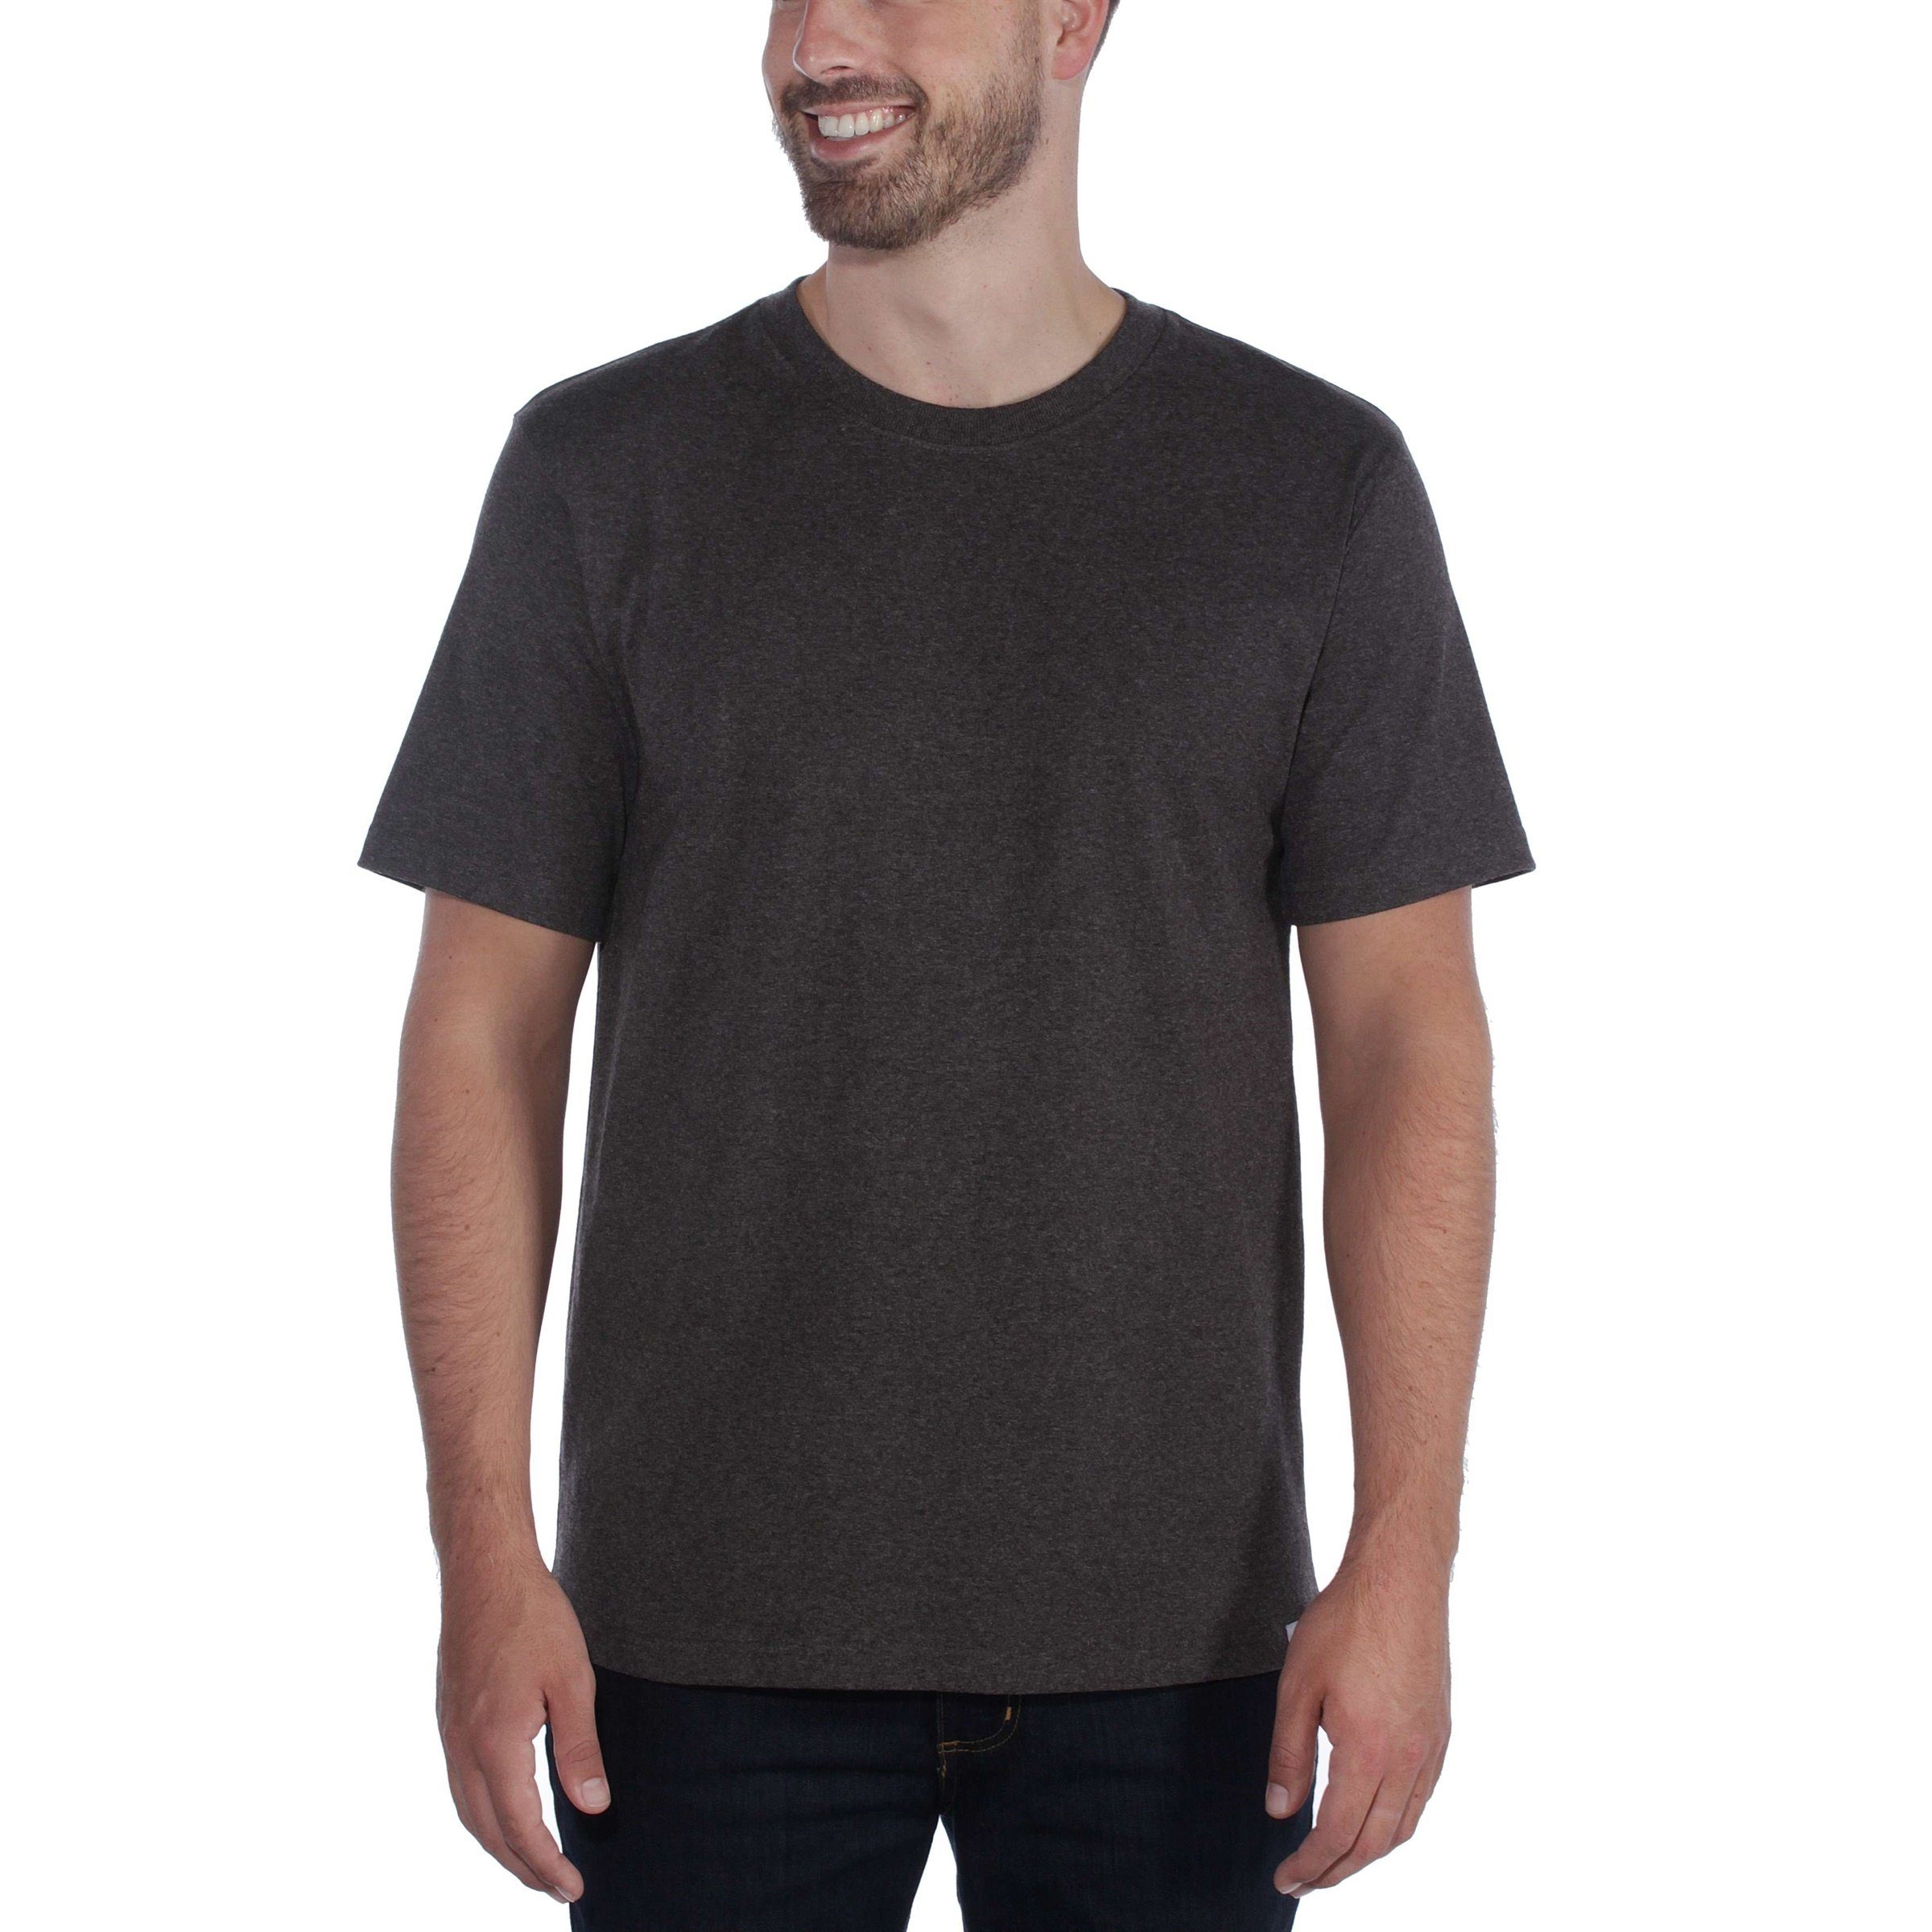 T-Shirt Heavyweight Herren Short-Sleeve black Fit Carhartt Carhartt Adult T-Shirt Relaxed